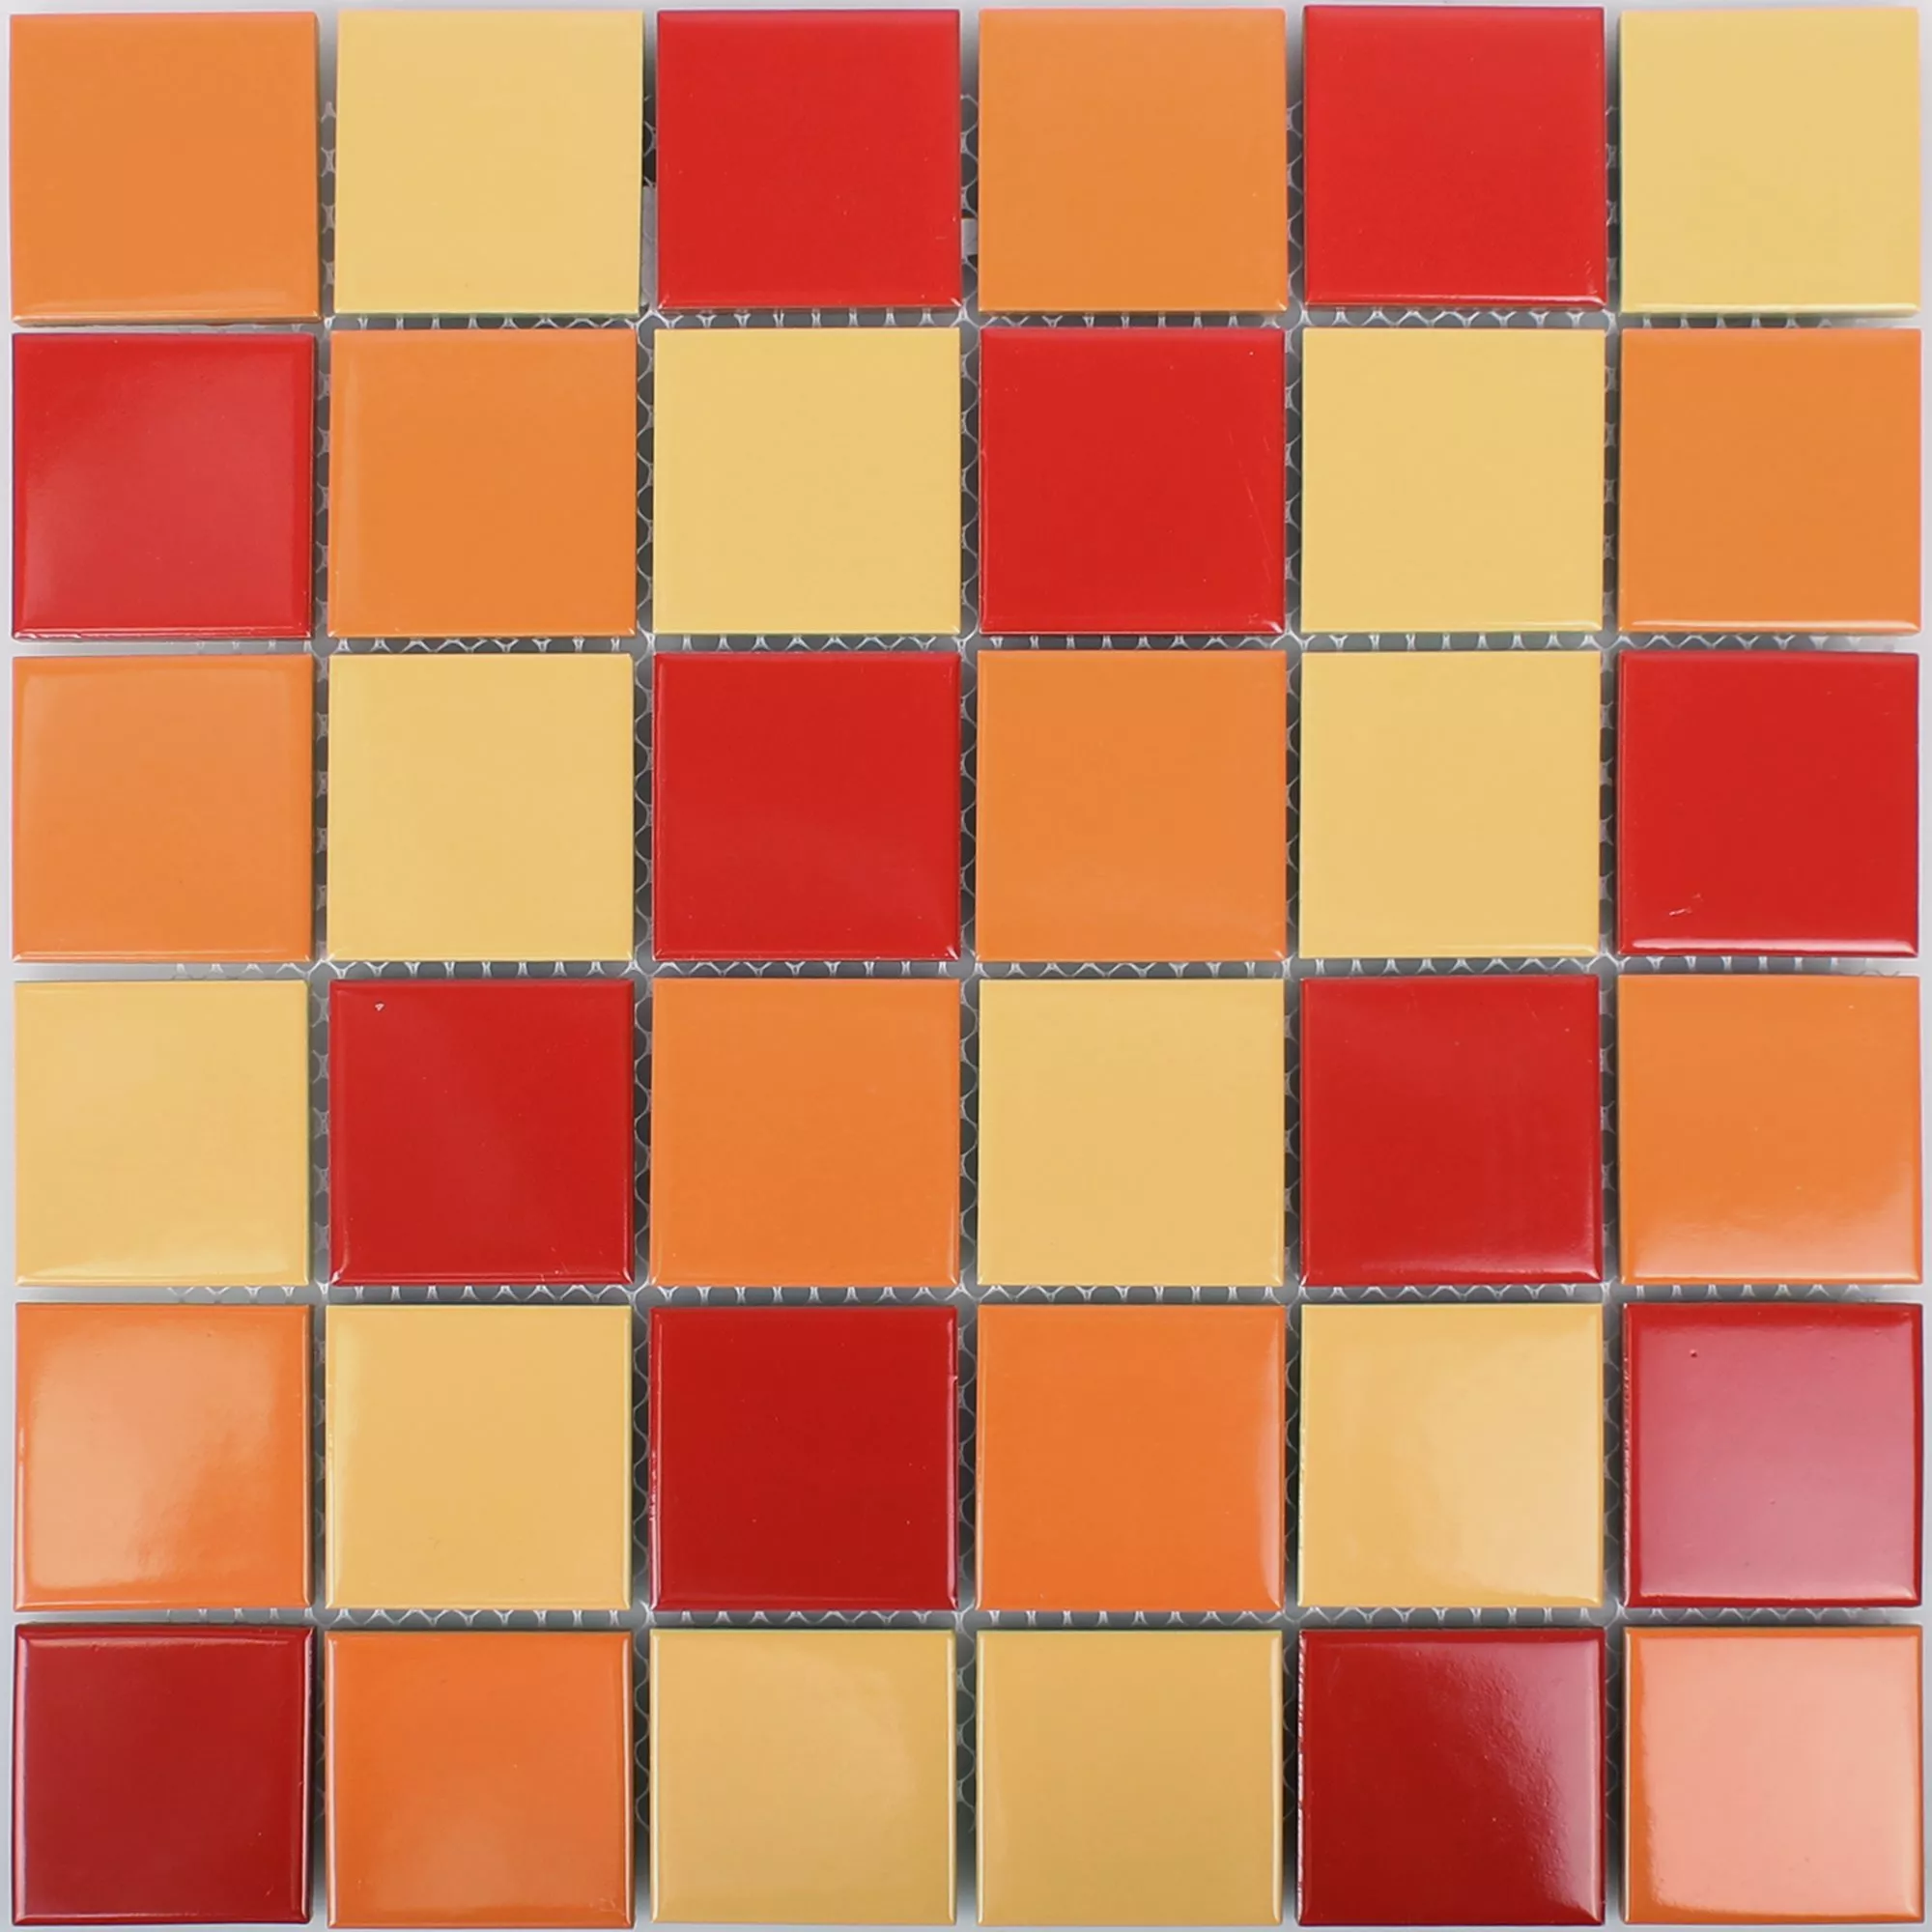 Campione Mosaico Ceramica Dordogne Giallo Arancione Rosso 